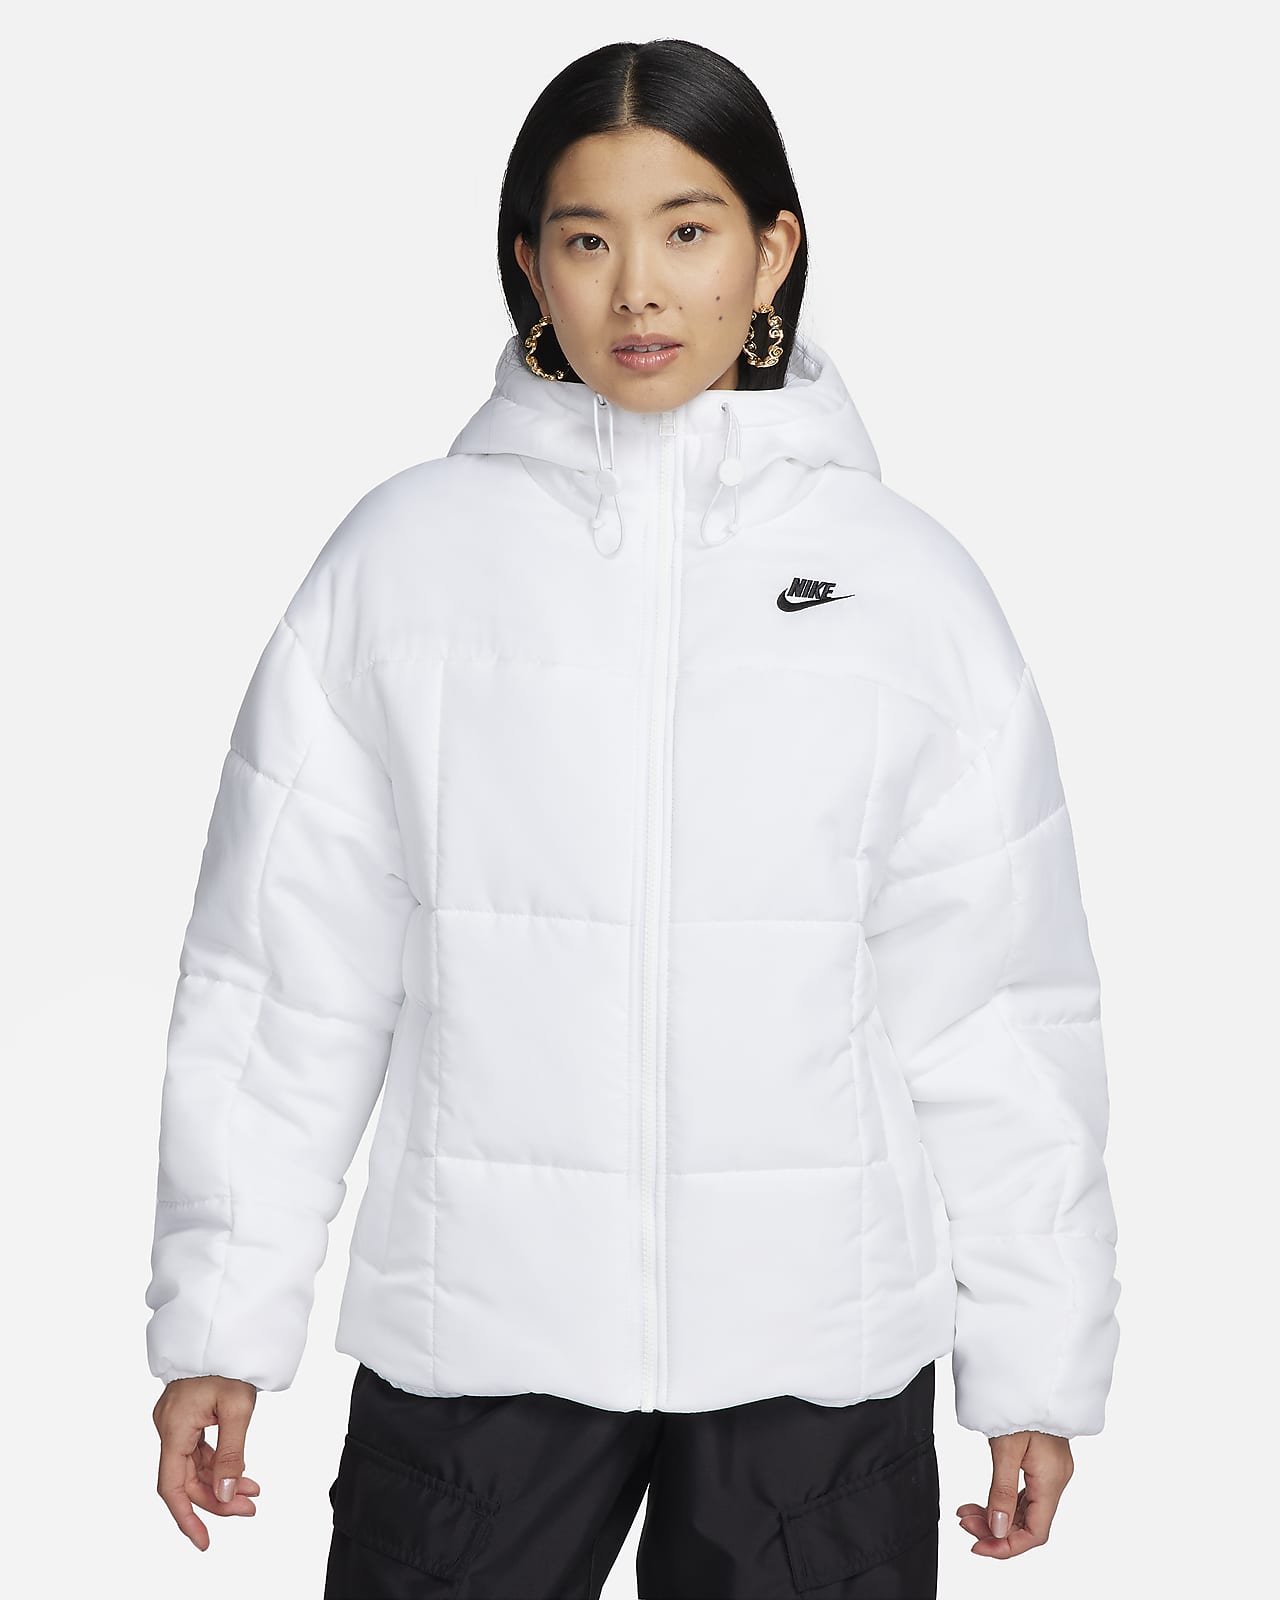 Women's Nike 11 Winter Jackets @ Stylight